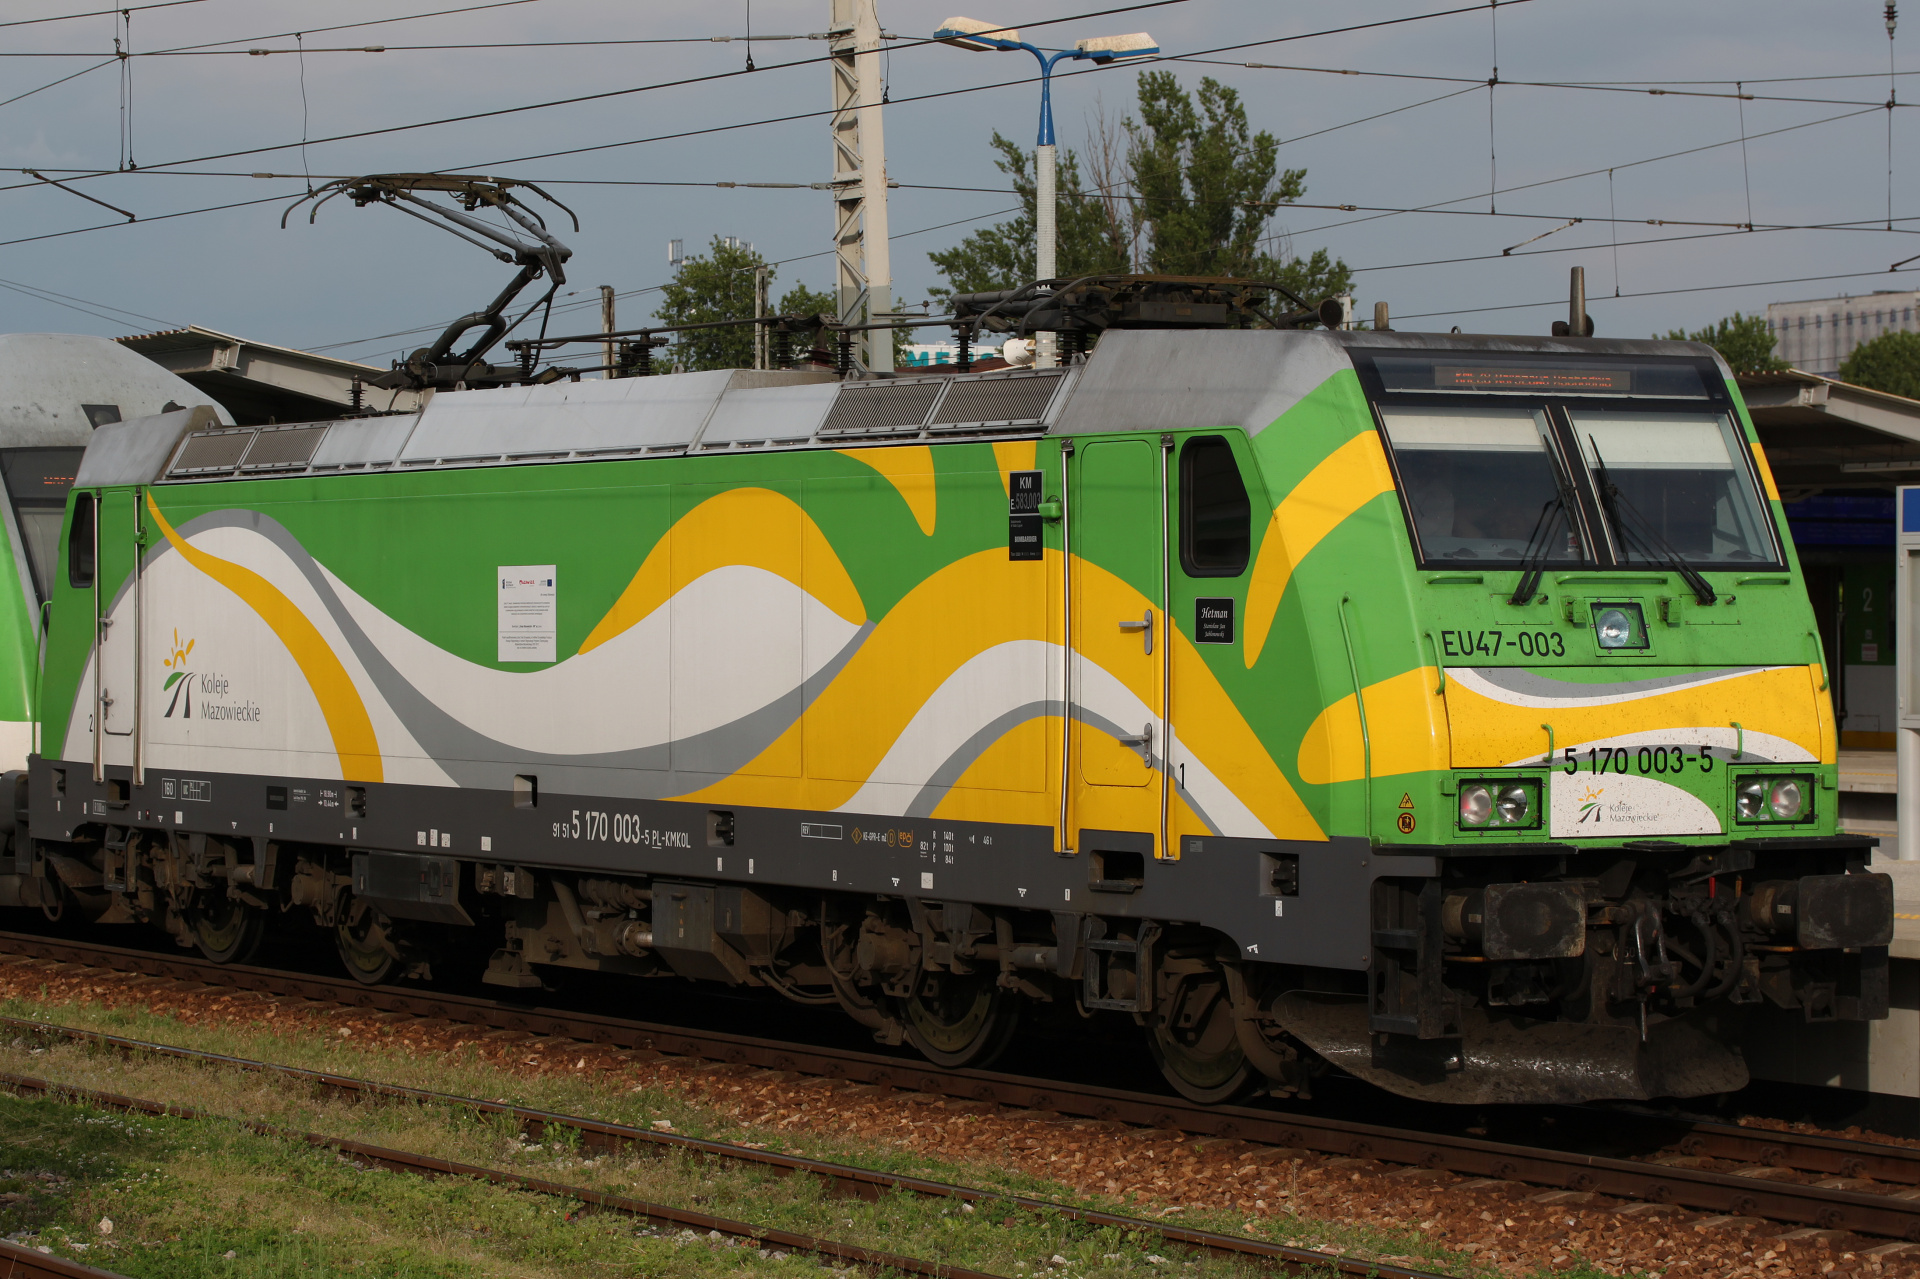 P160DC E583 EU47-003 (Hetman) (Pojazdy » Pociągi i lokomotywy » Bombardier TRAXX)